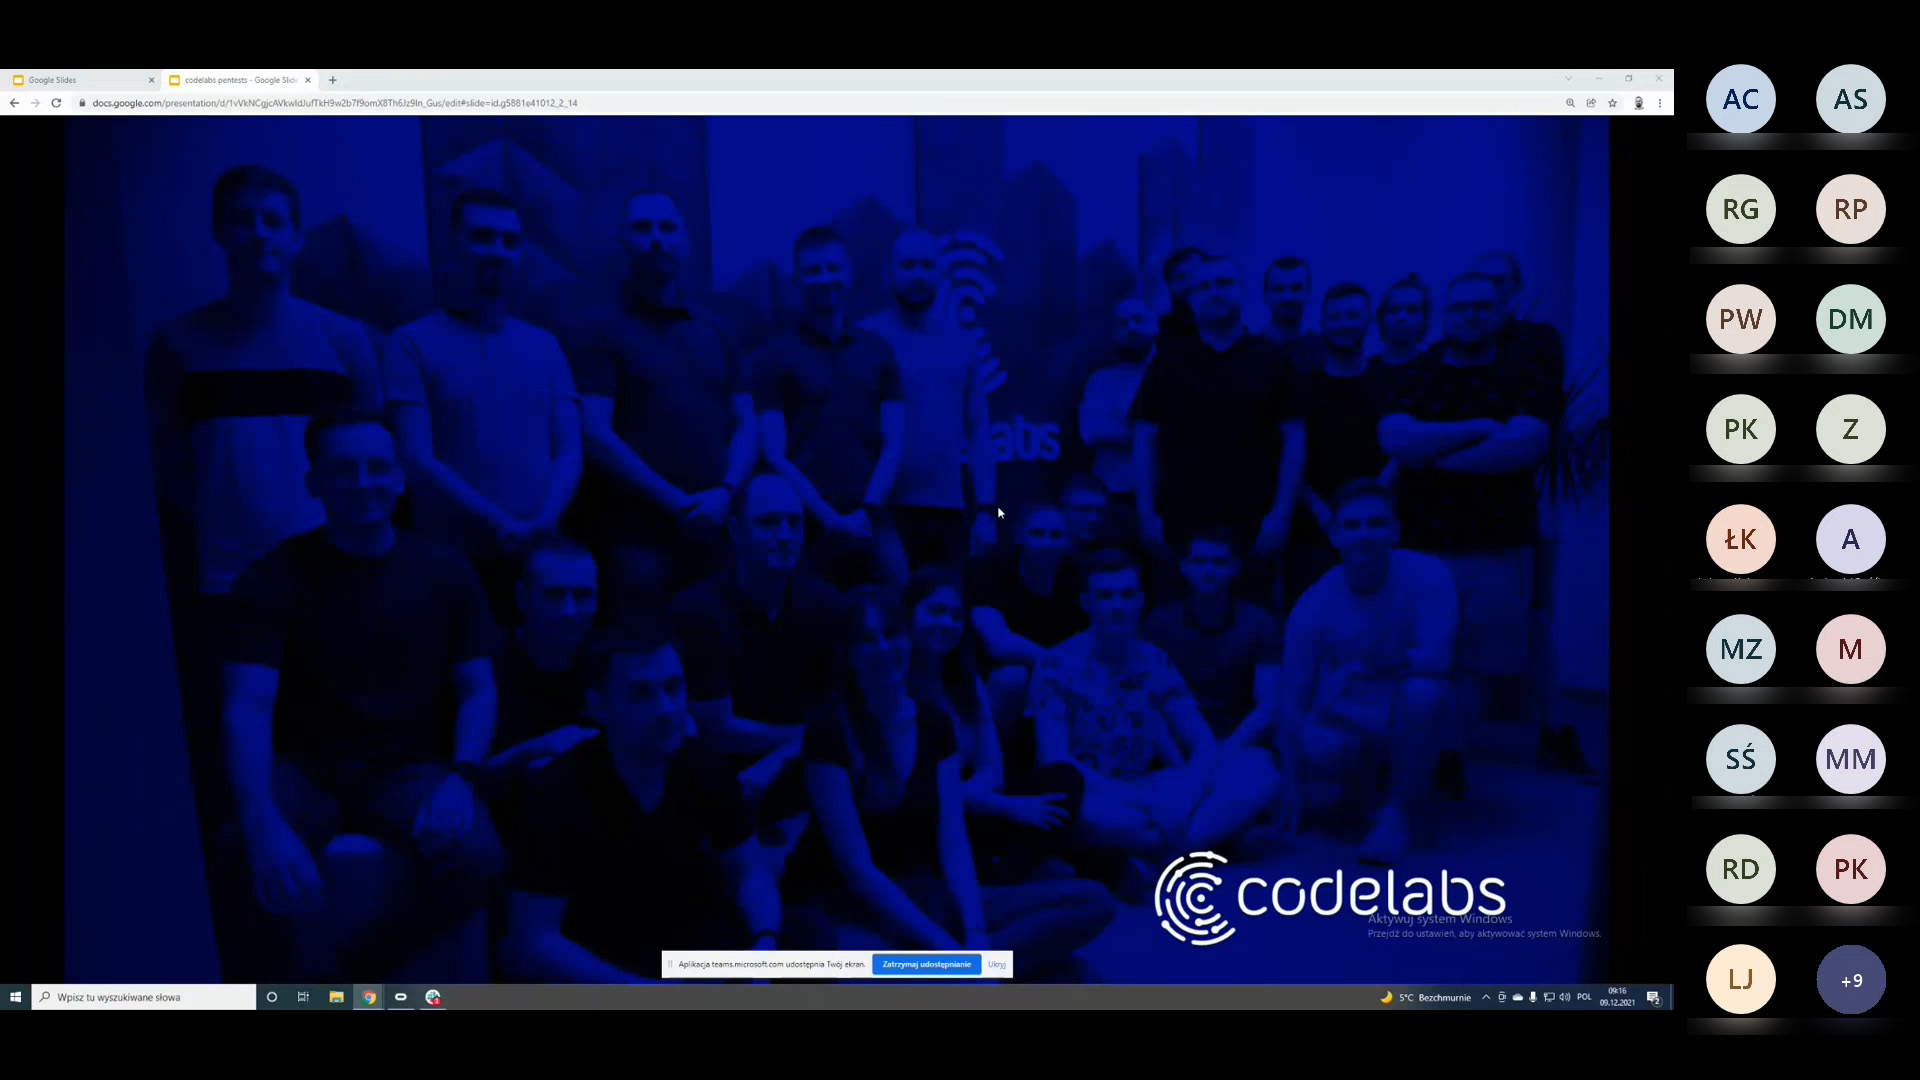 webinarium-codelabs-vecto-09-12-2021